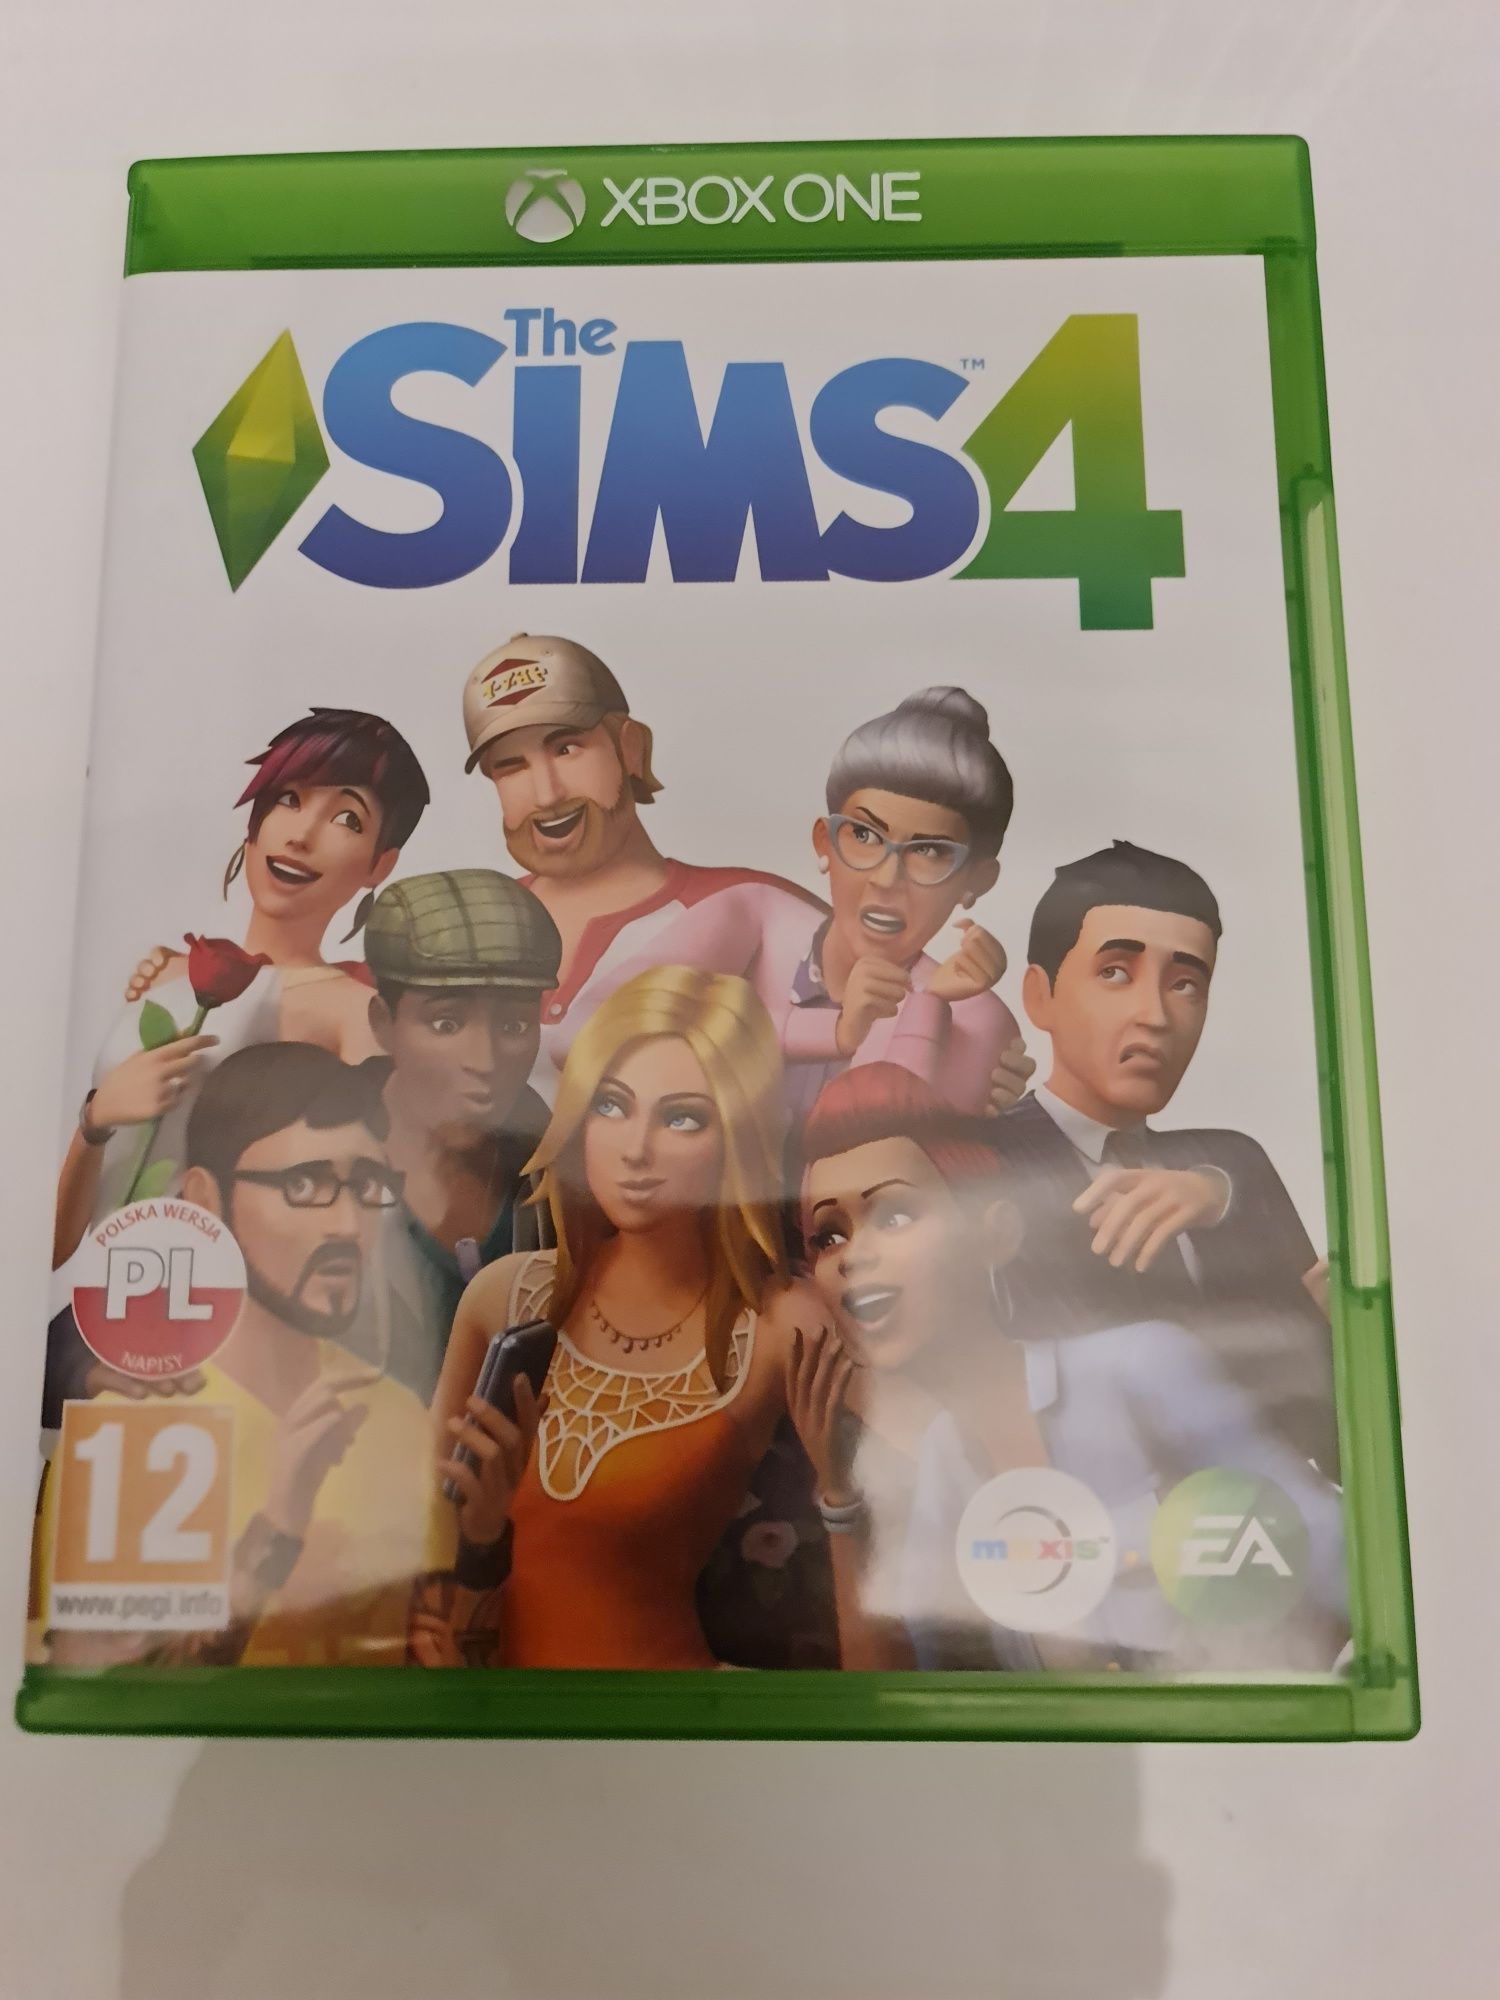 Grab Sims 4 xbox one